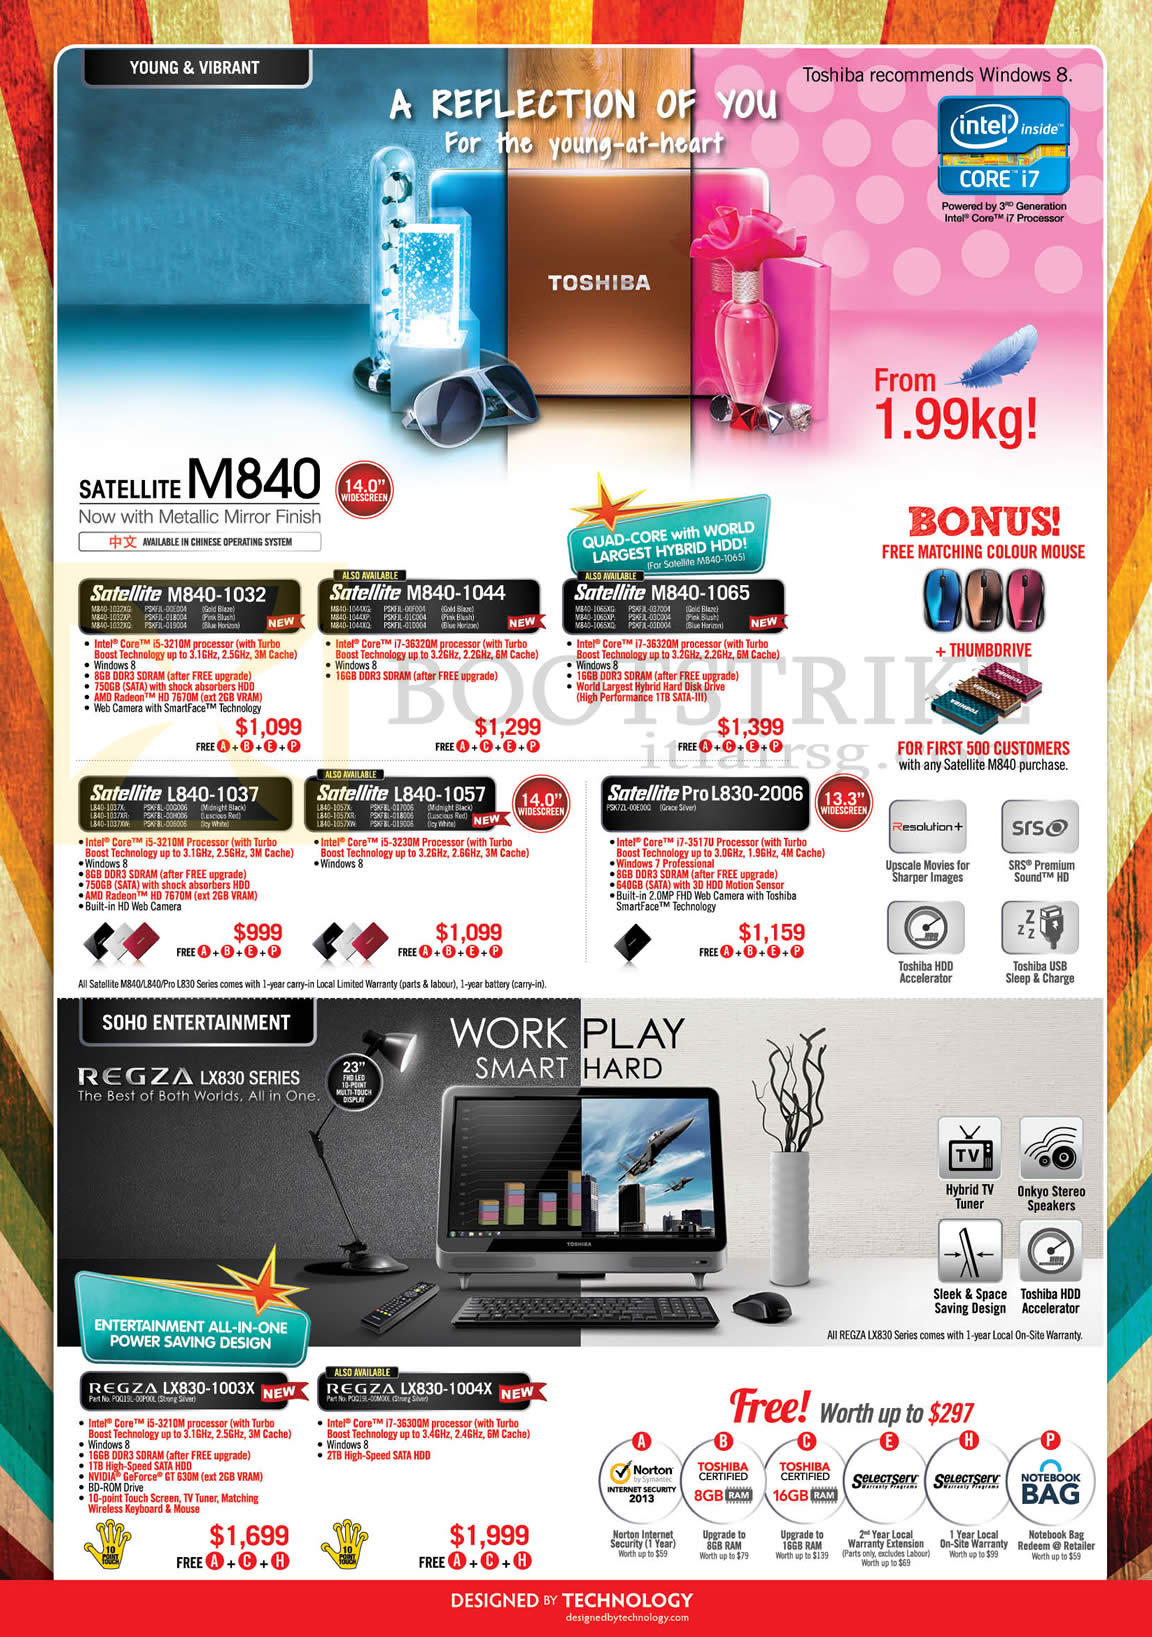 IT SHOW 2013 price list image brochure of Toshiba Notebooks Satellite M840-1032, M840-1044, M840-1065, L830-2006, L840-1057, L840-1037, Pro L830-2006, Regza AIO Desktop PC LXL830-1003X 1004X